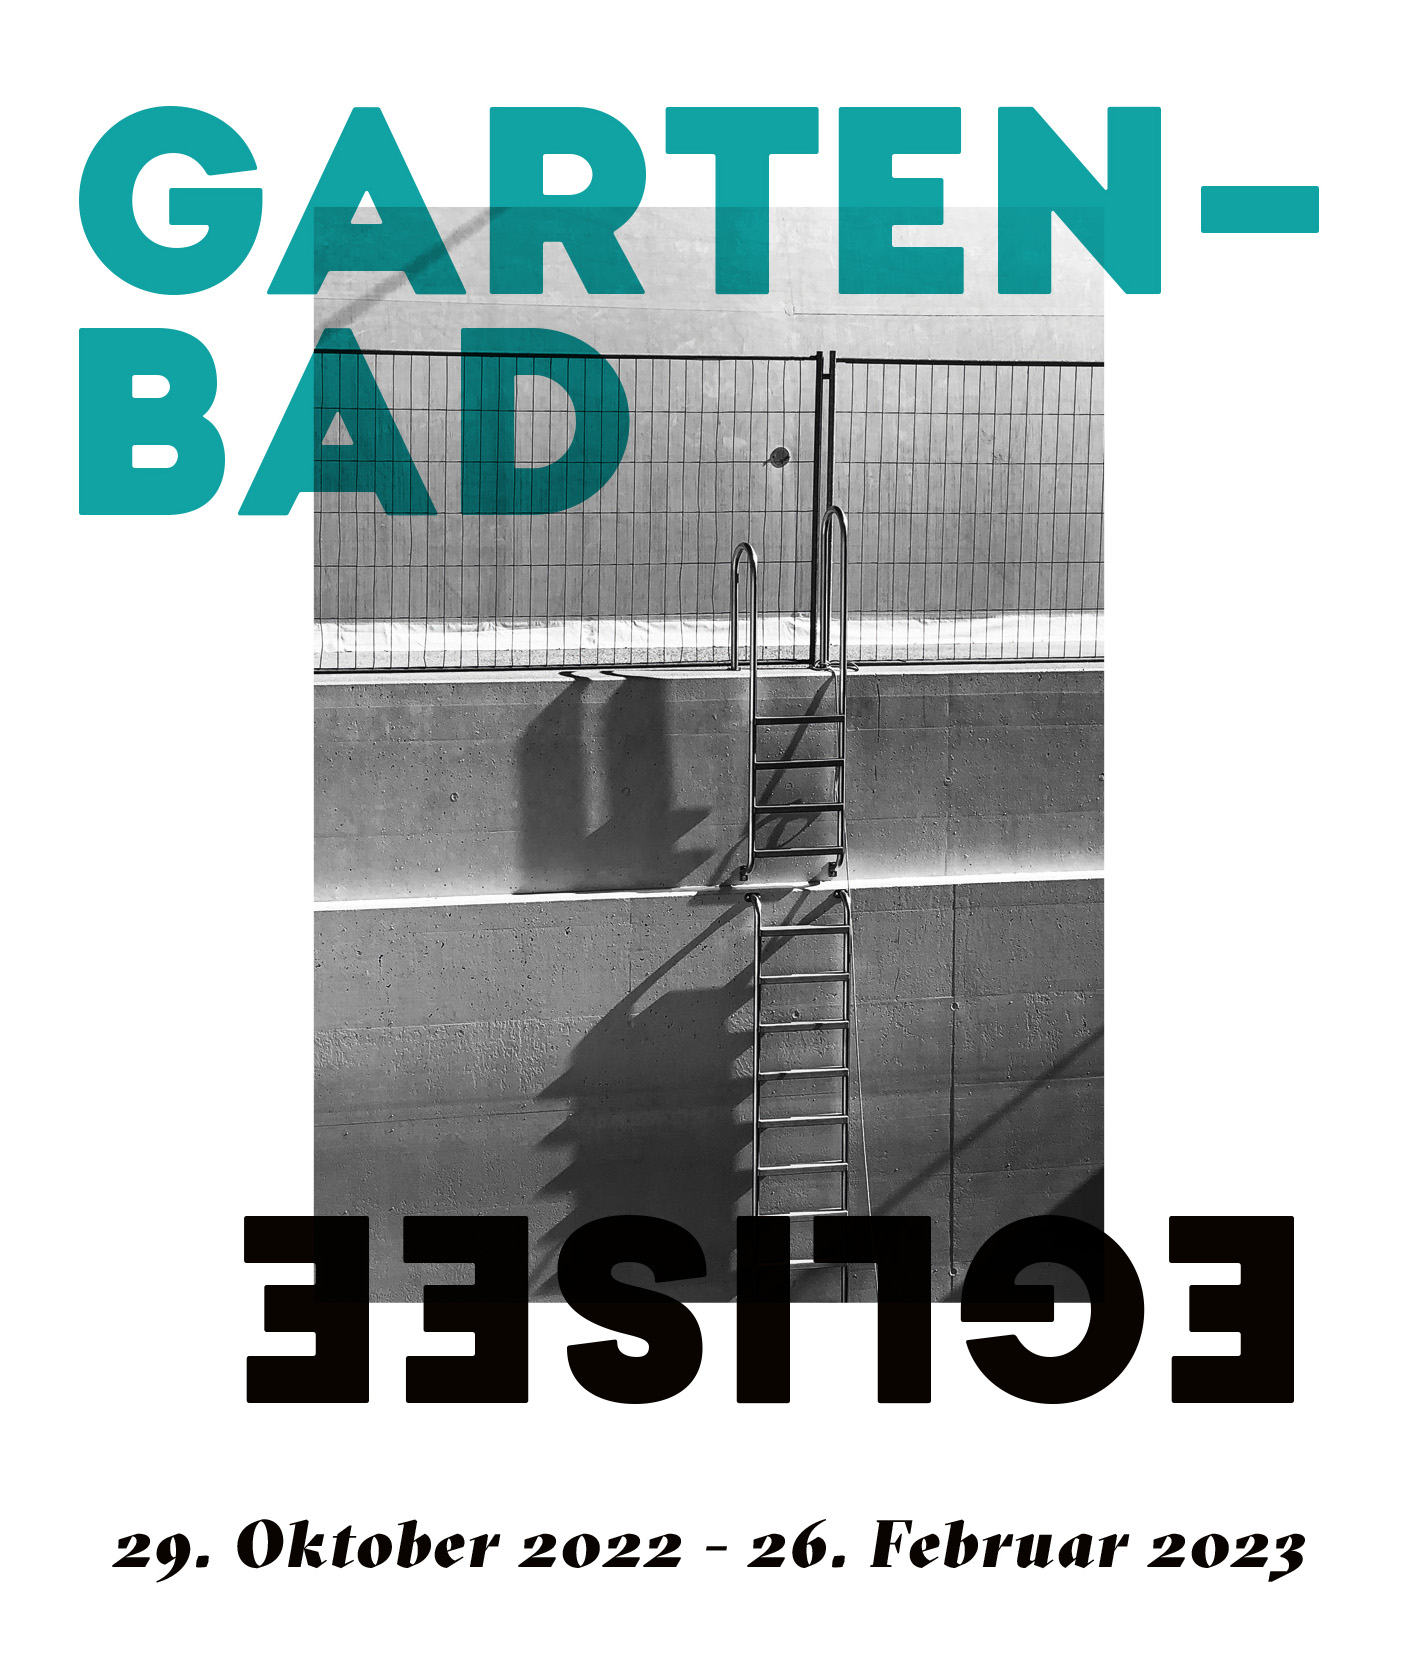 Jetzt Kunst No.13 im Gartenbad Eglisee, Basel.
29.10.2022 bis 26.2.2023